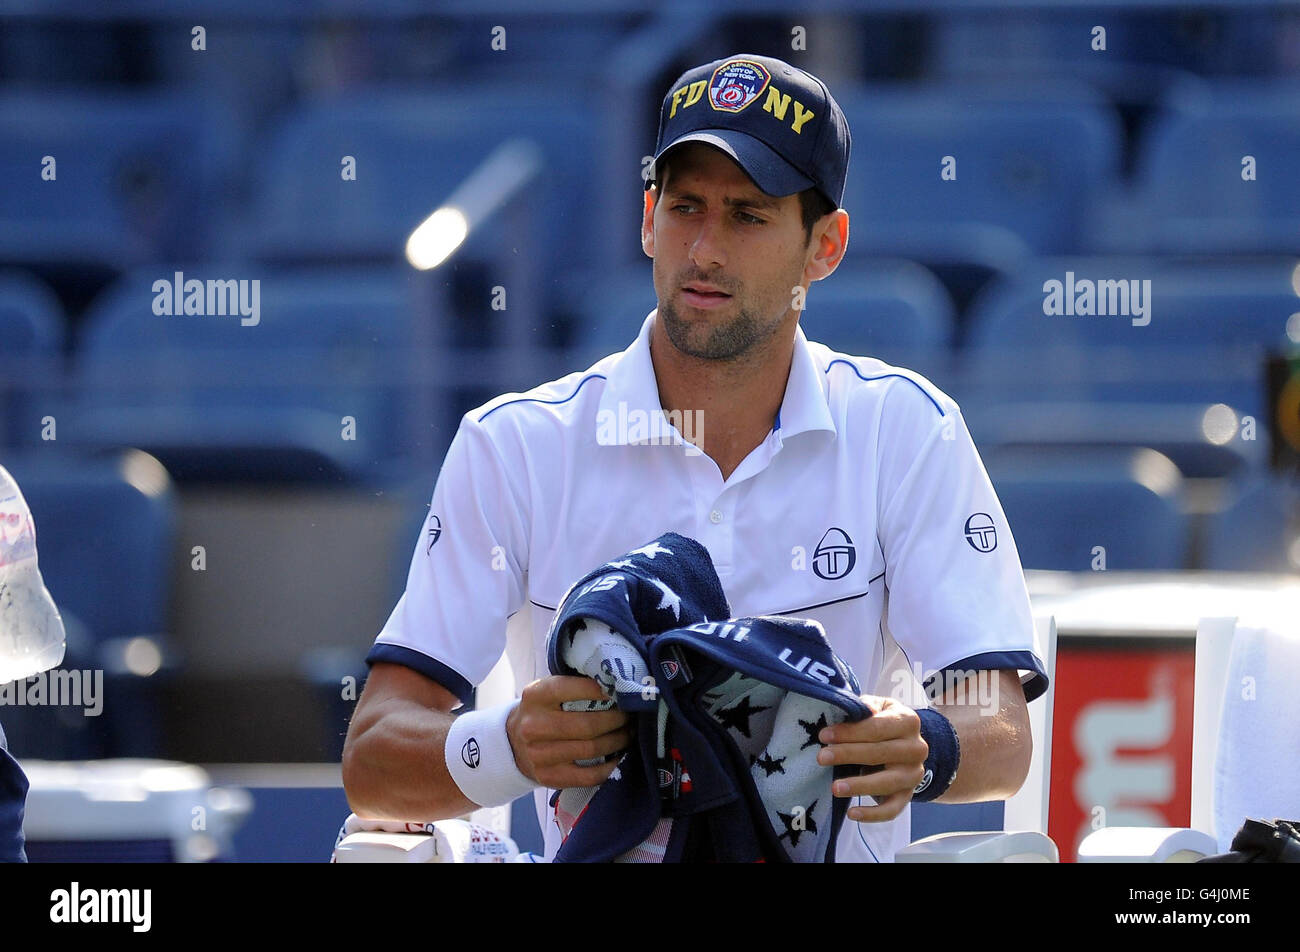 Le Novak Djokovic de Serbie possède une casquette de baseball FDNY au cours  du quinze jour de l'US Open à Flushing Meadows, New York, États-Unis Photo  Stock - Alamy